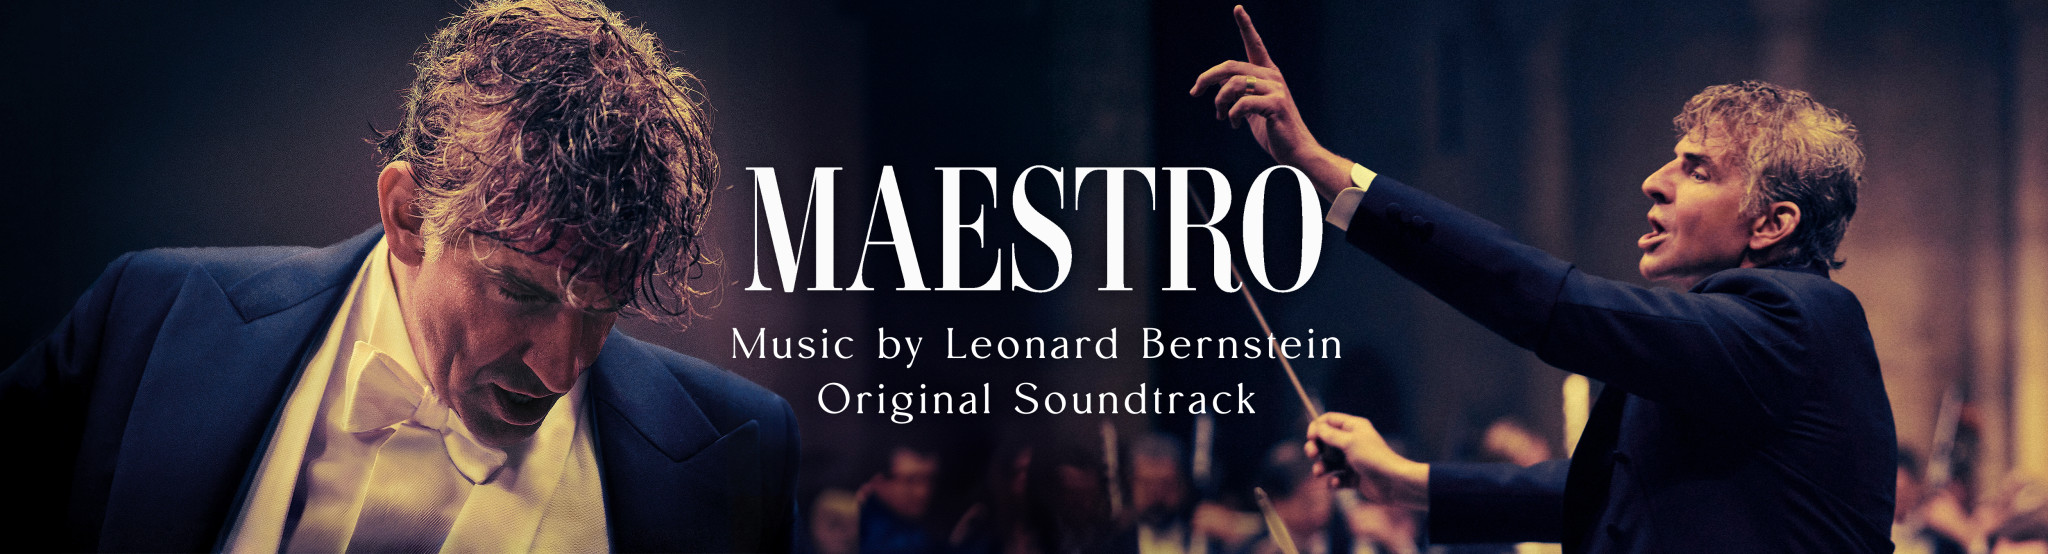 Leonard Bernstein - Maestro hero banner